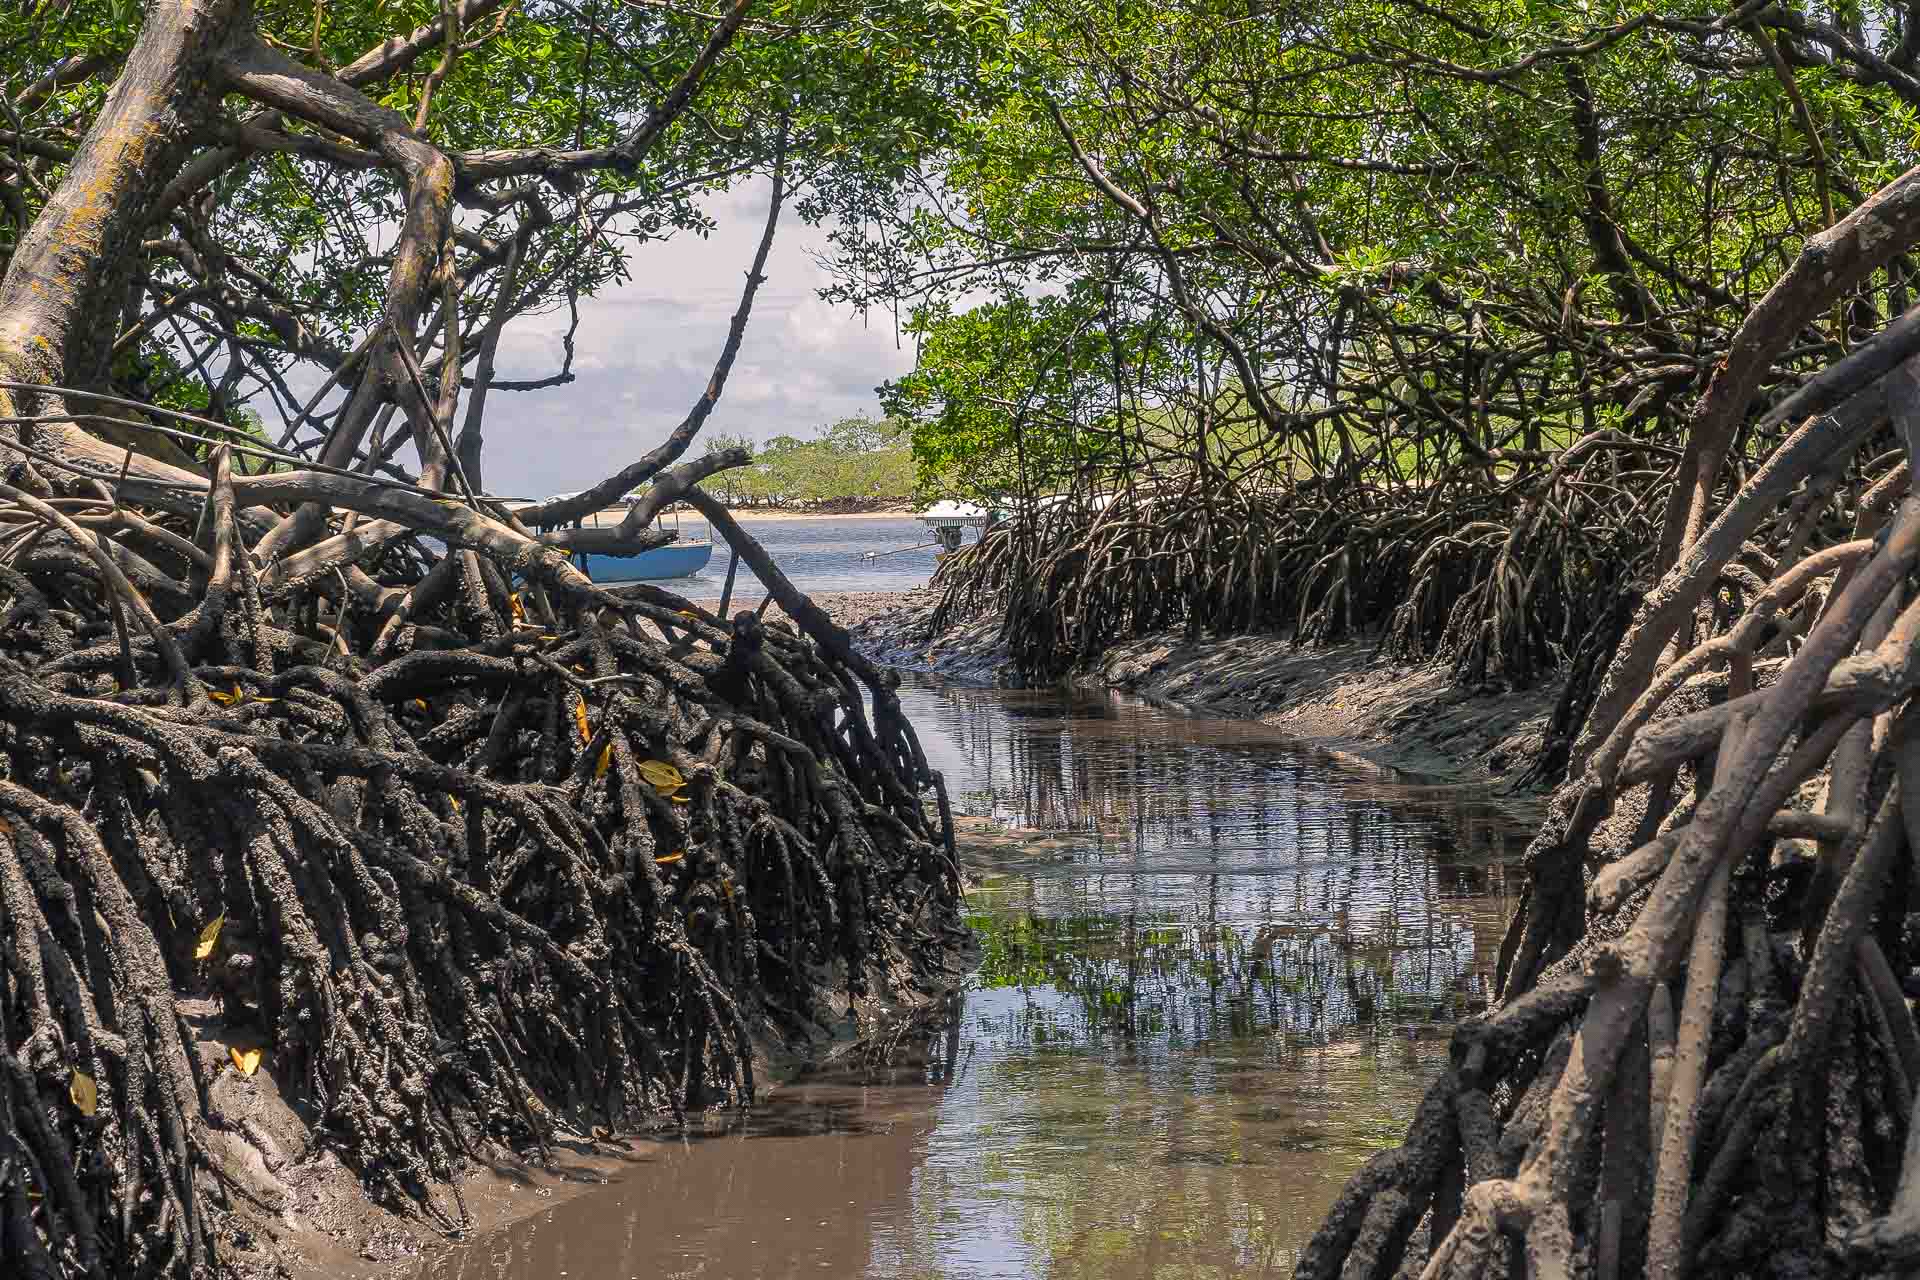 Um rio pequeno cortando um mangue fechado cheio de raizes altas que desagua no mar